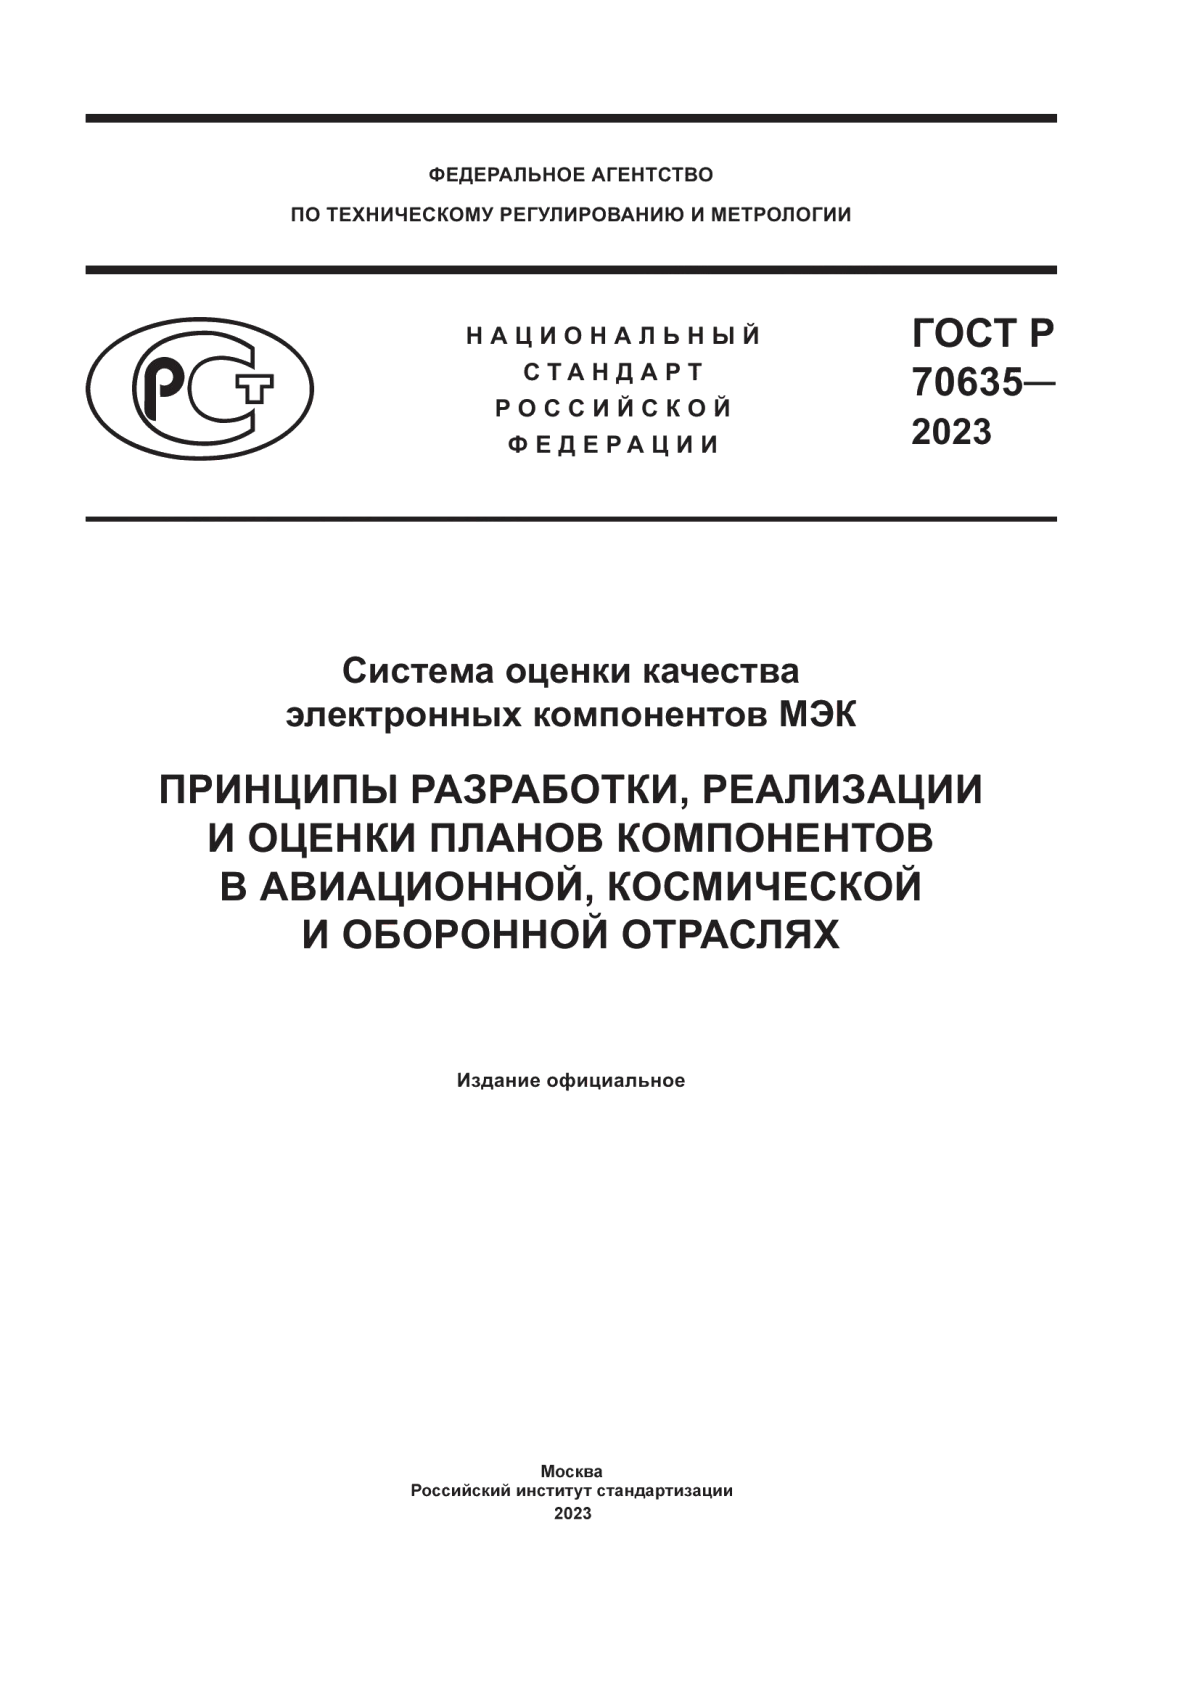 ГОСТ Р 70635-2023 Система оценки качества электронных компонентов МЭК. Принципы разработки, реализации и оценки планов компонентов в авиационной, космической и оборонной отраслях